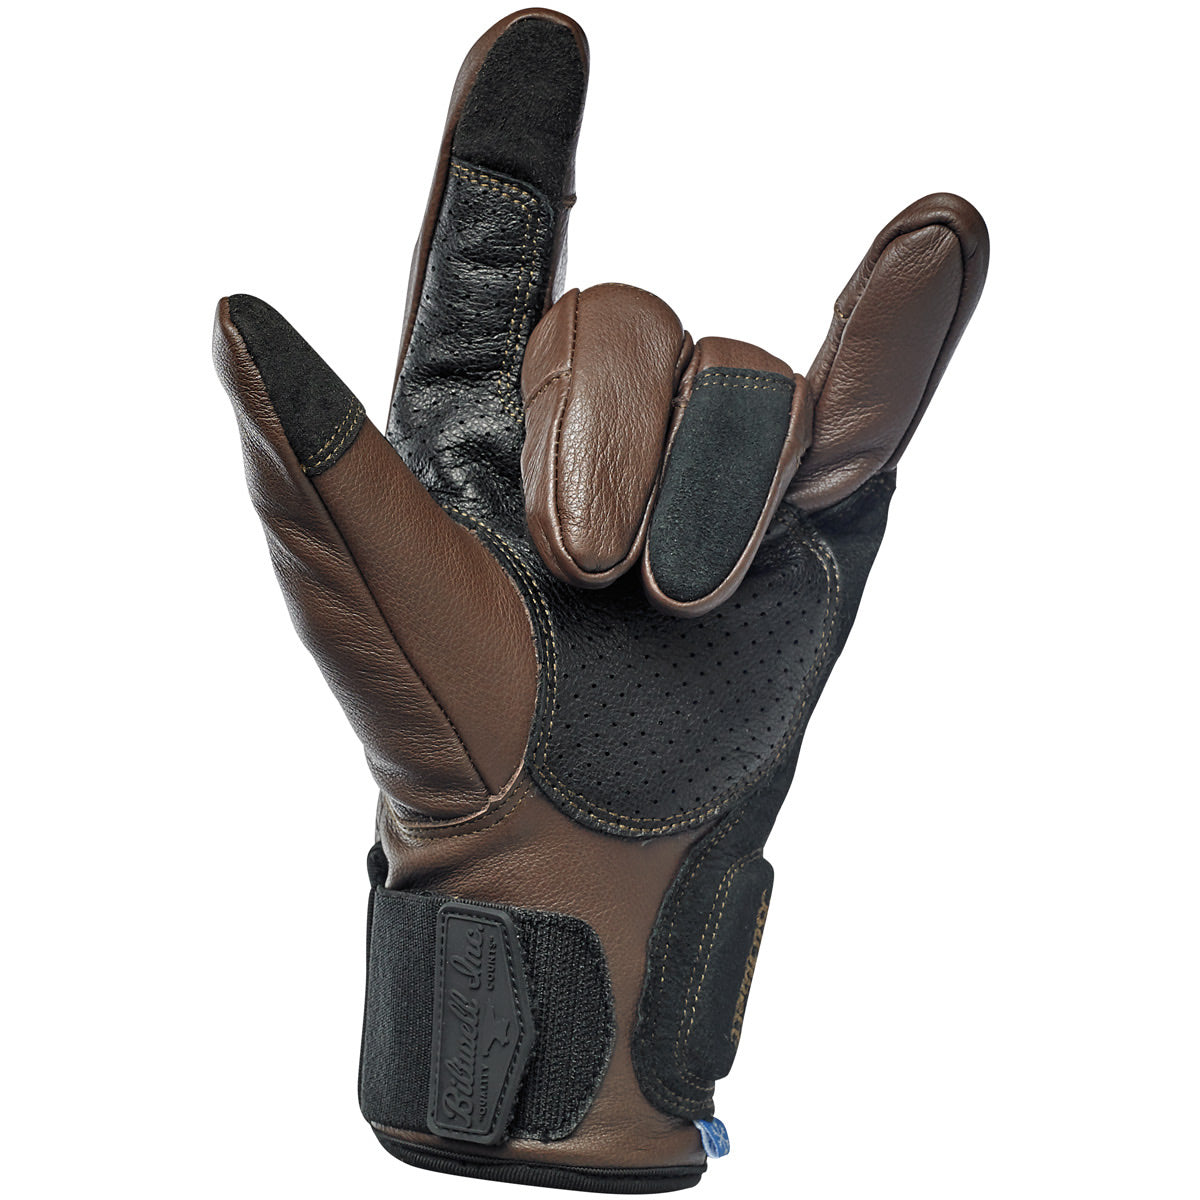 Belden Gloves - Chocolate/Black